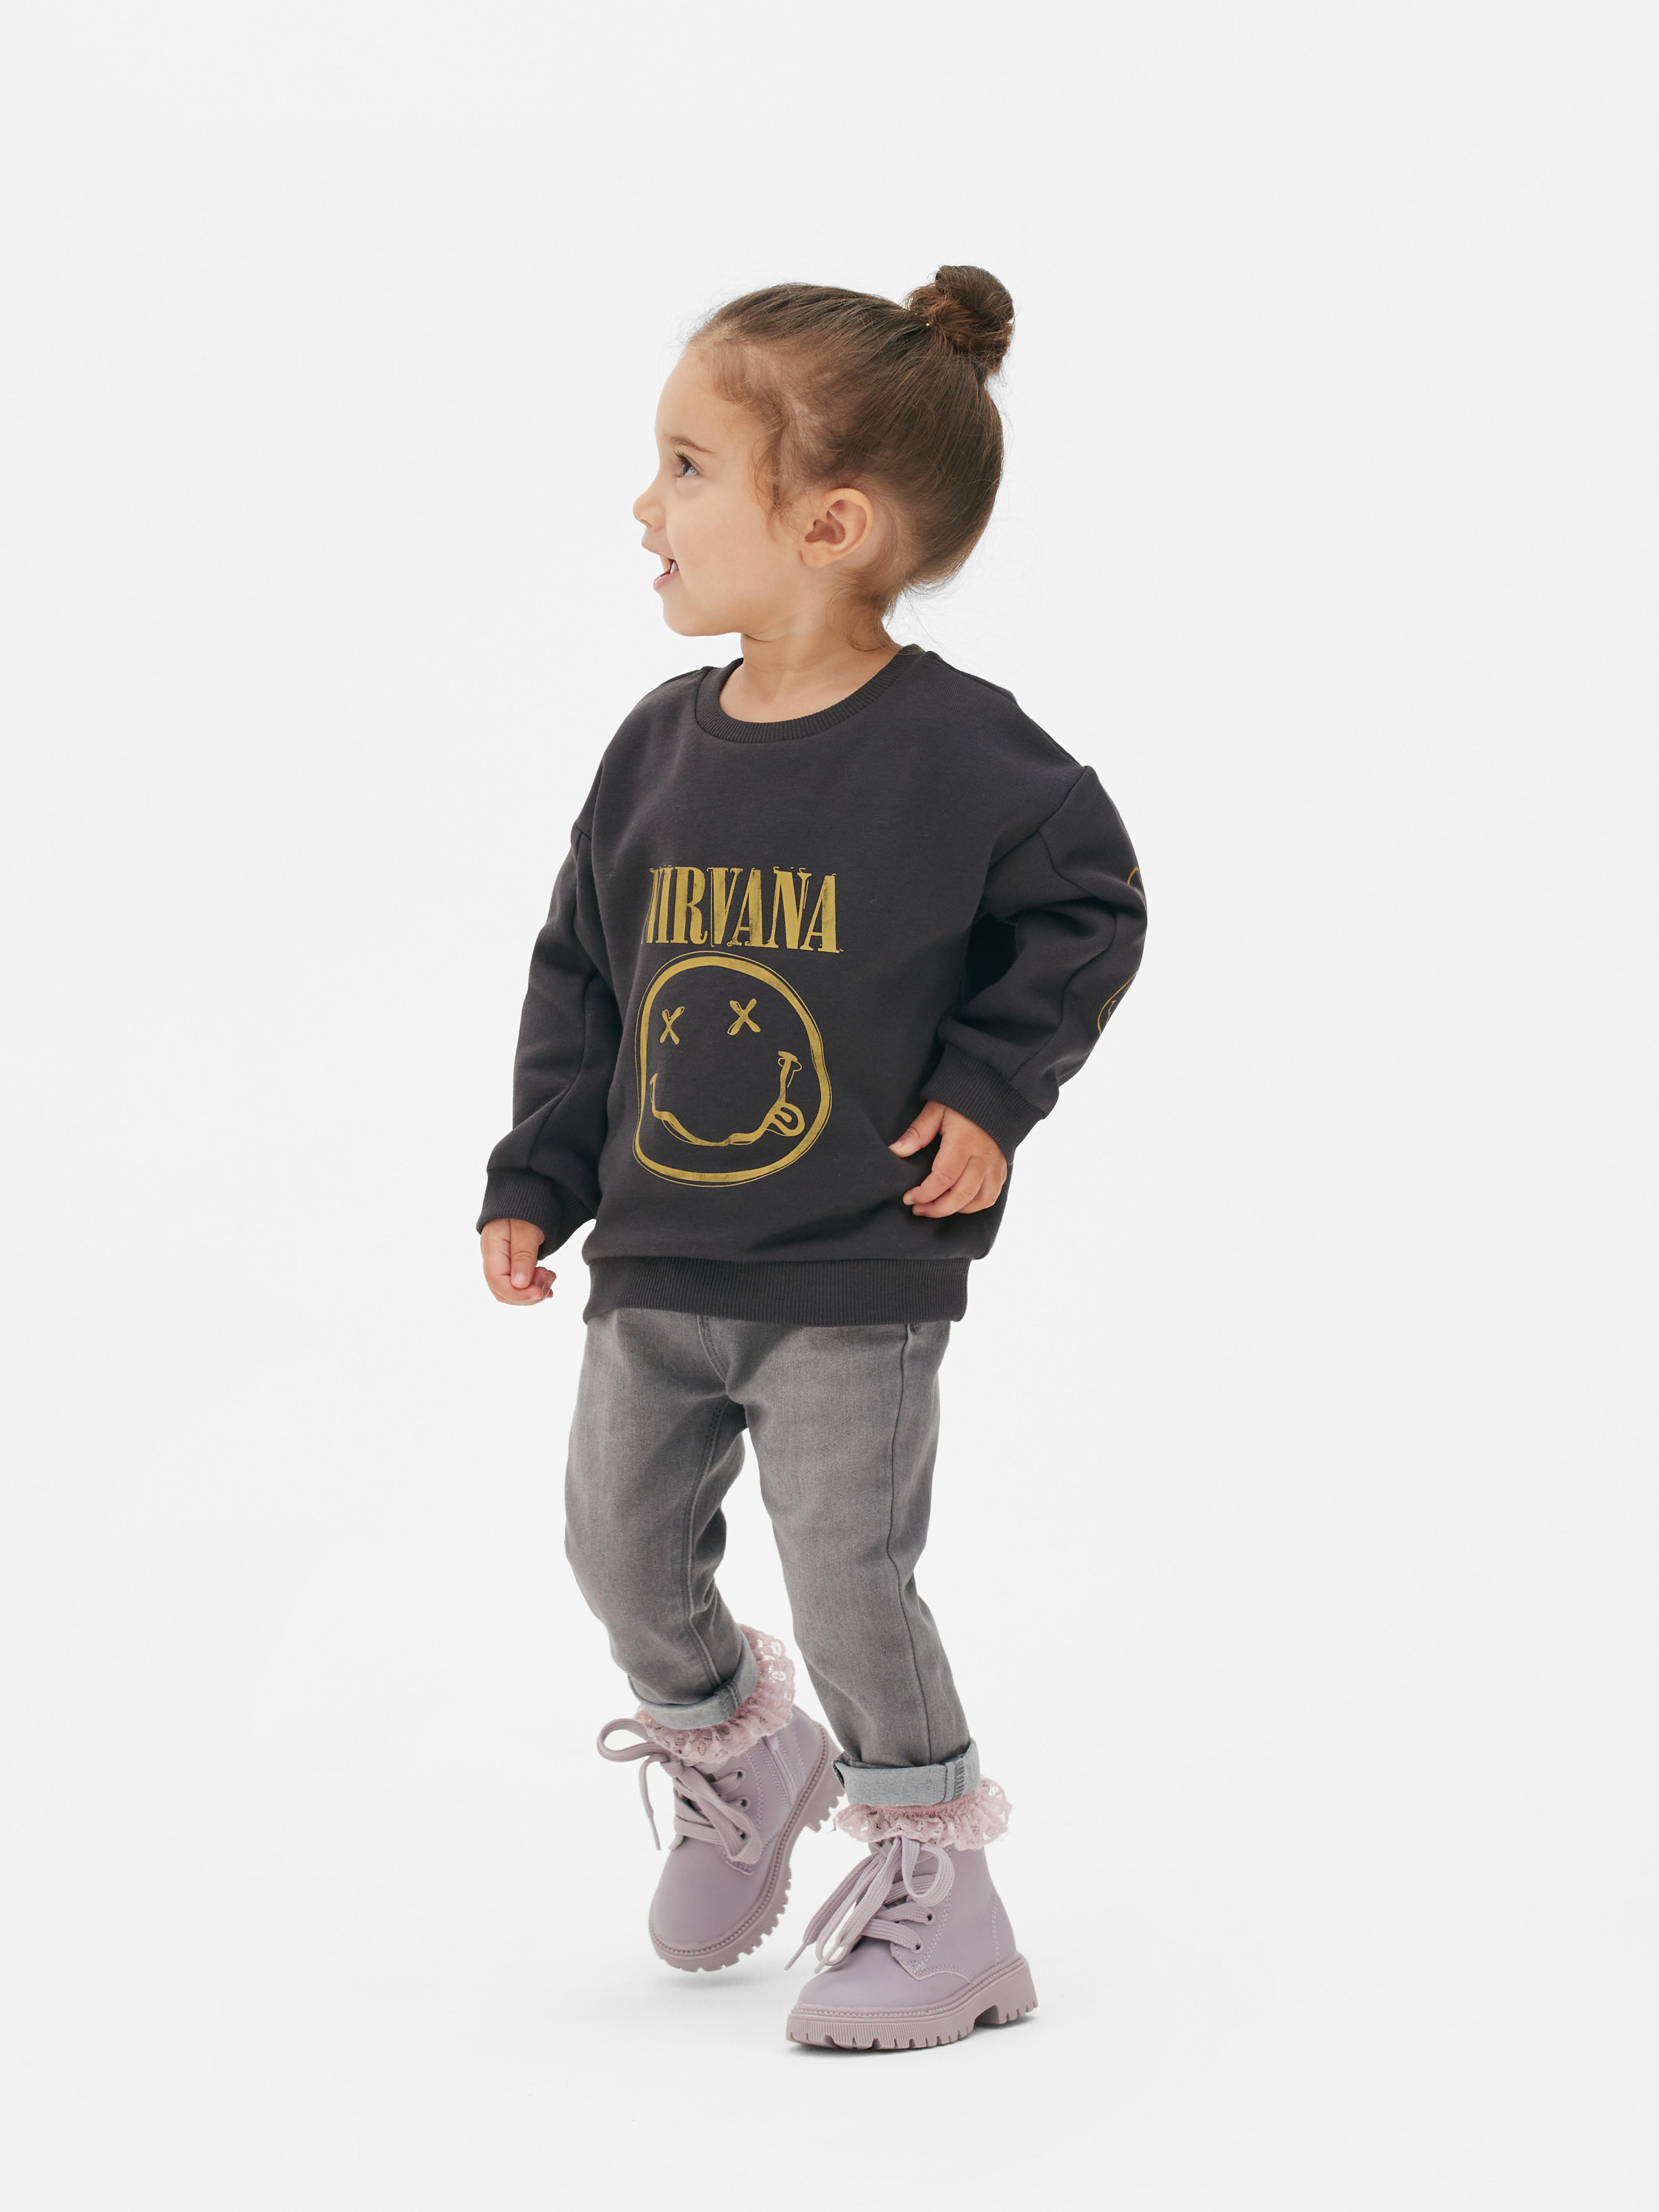 Nirvana Graphic Sweatshirt